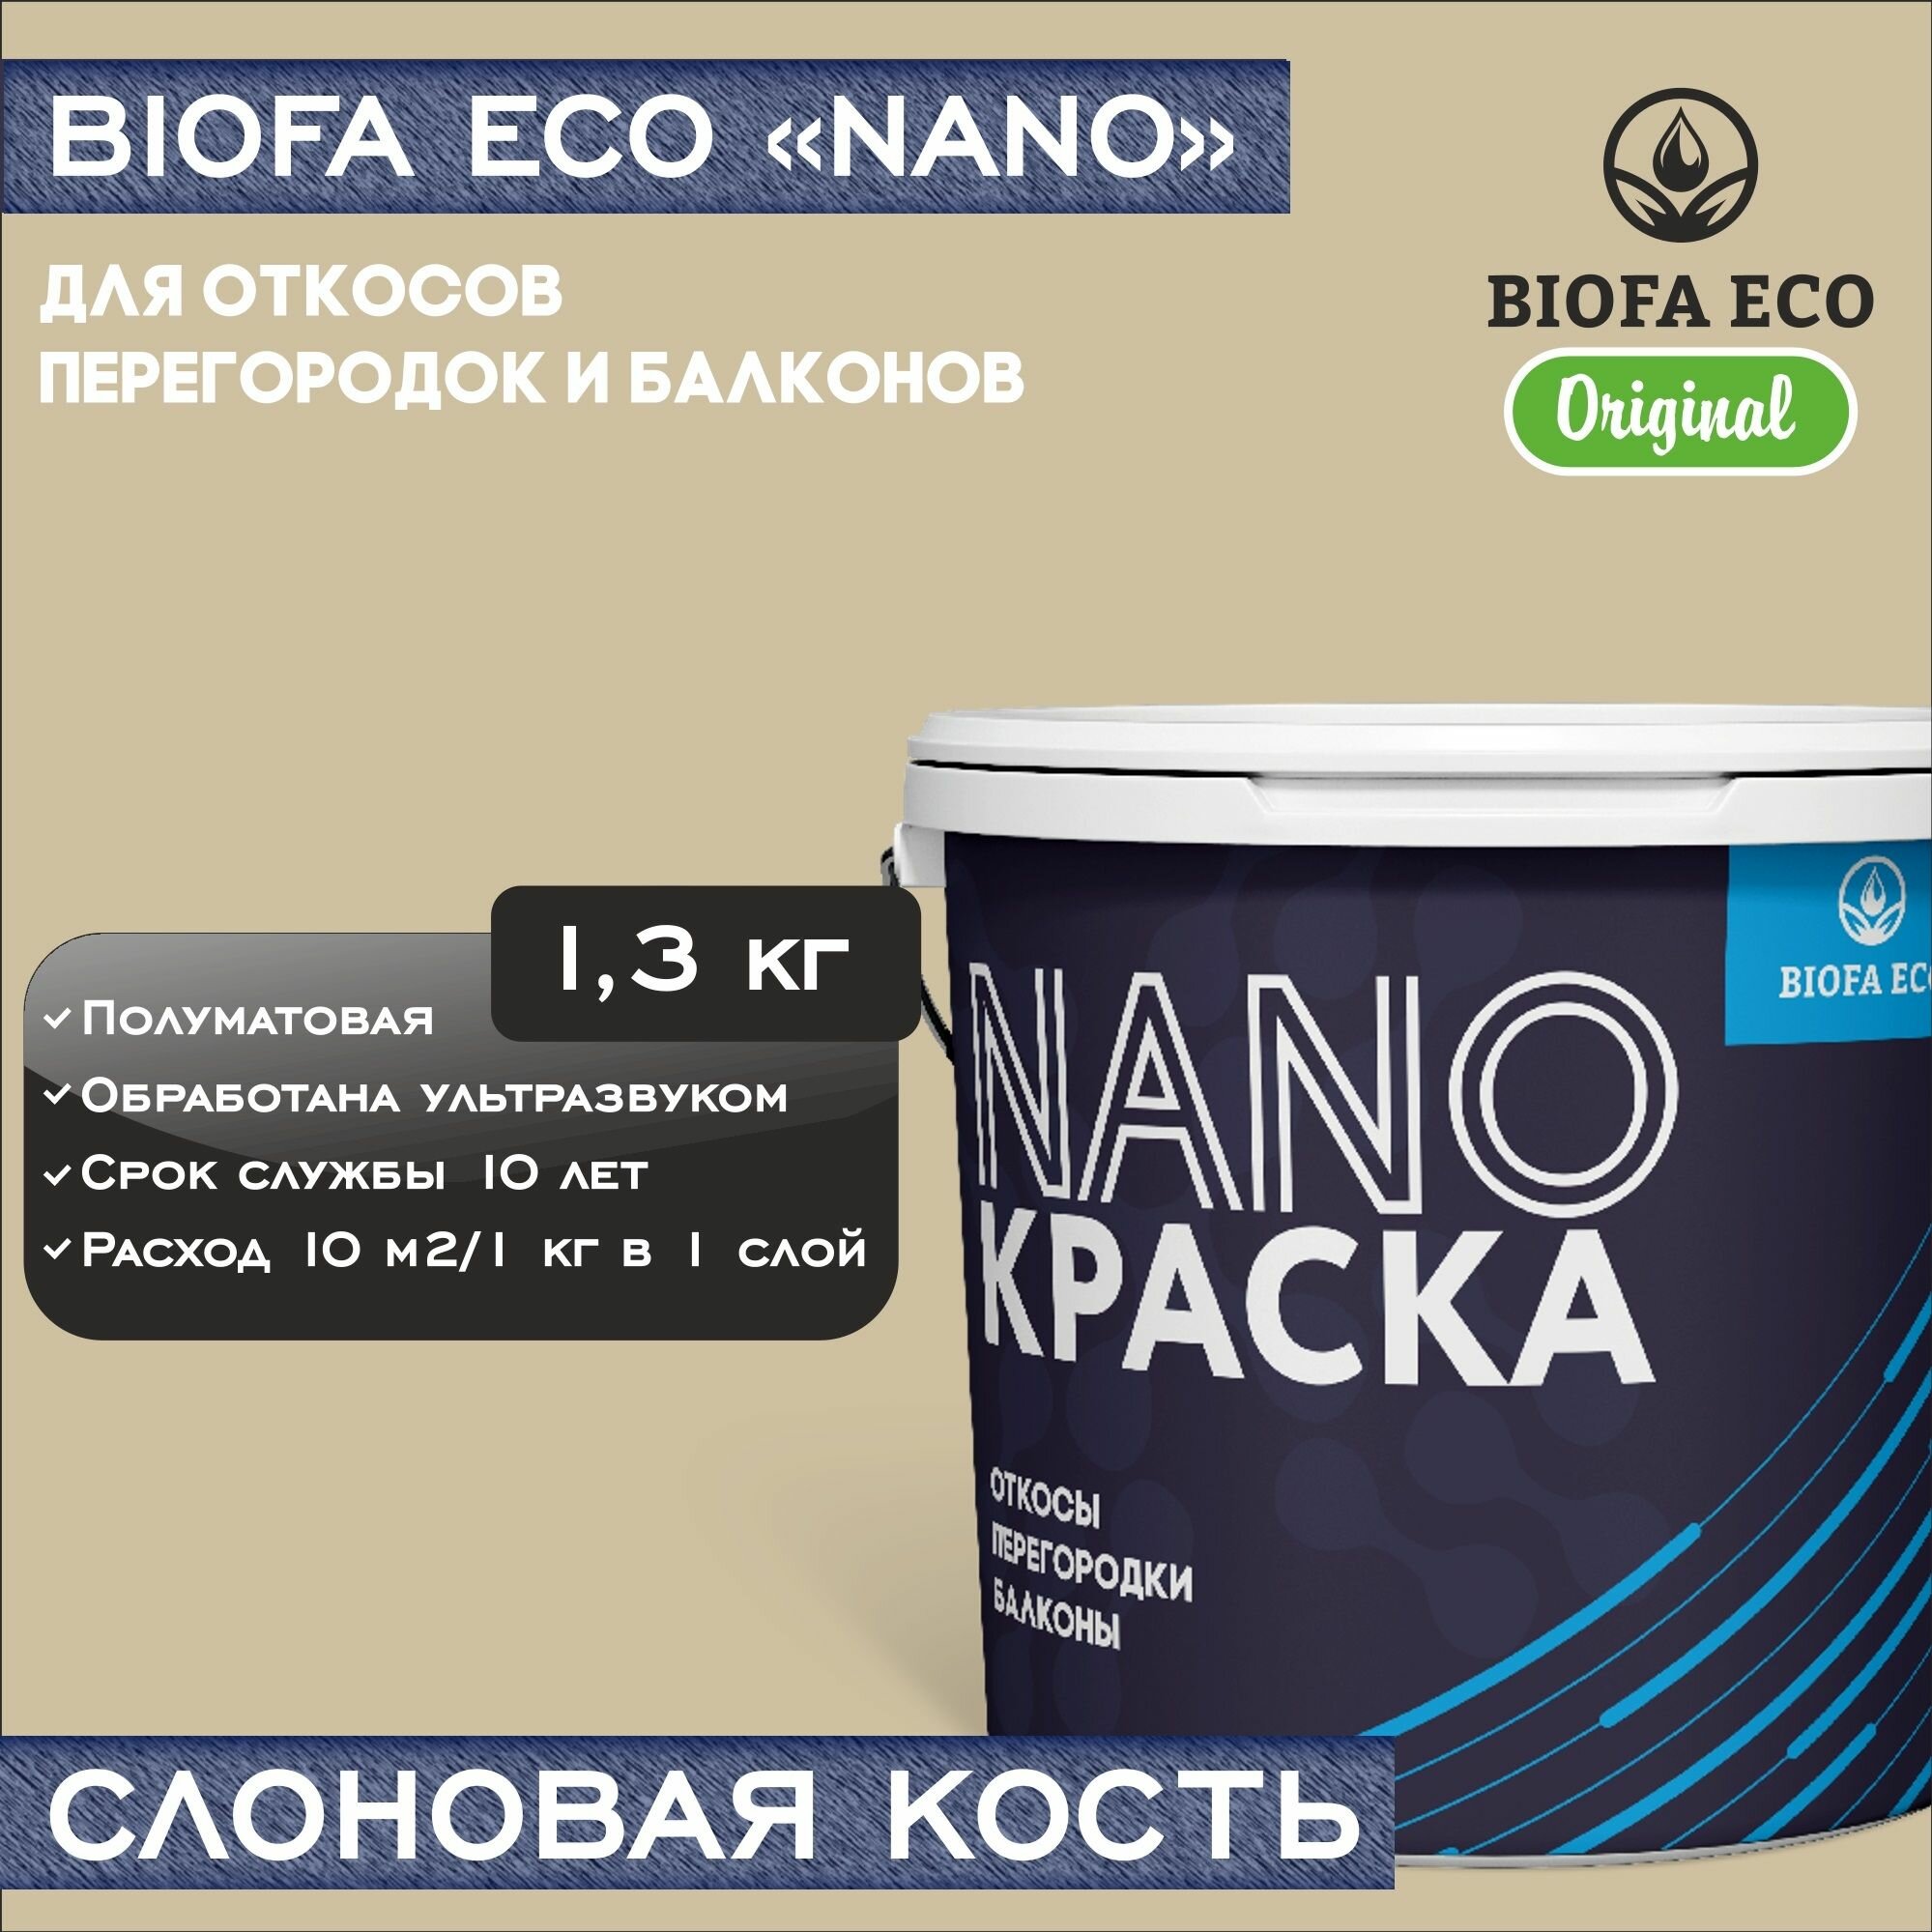 Краска BIOFA ECO NANO для откосов, перегородок и балконов, адгезионная, полуматовая, цвет слоновая кость, 1,3 кг